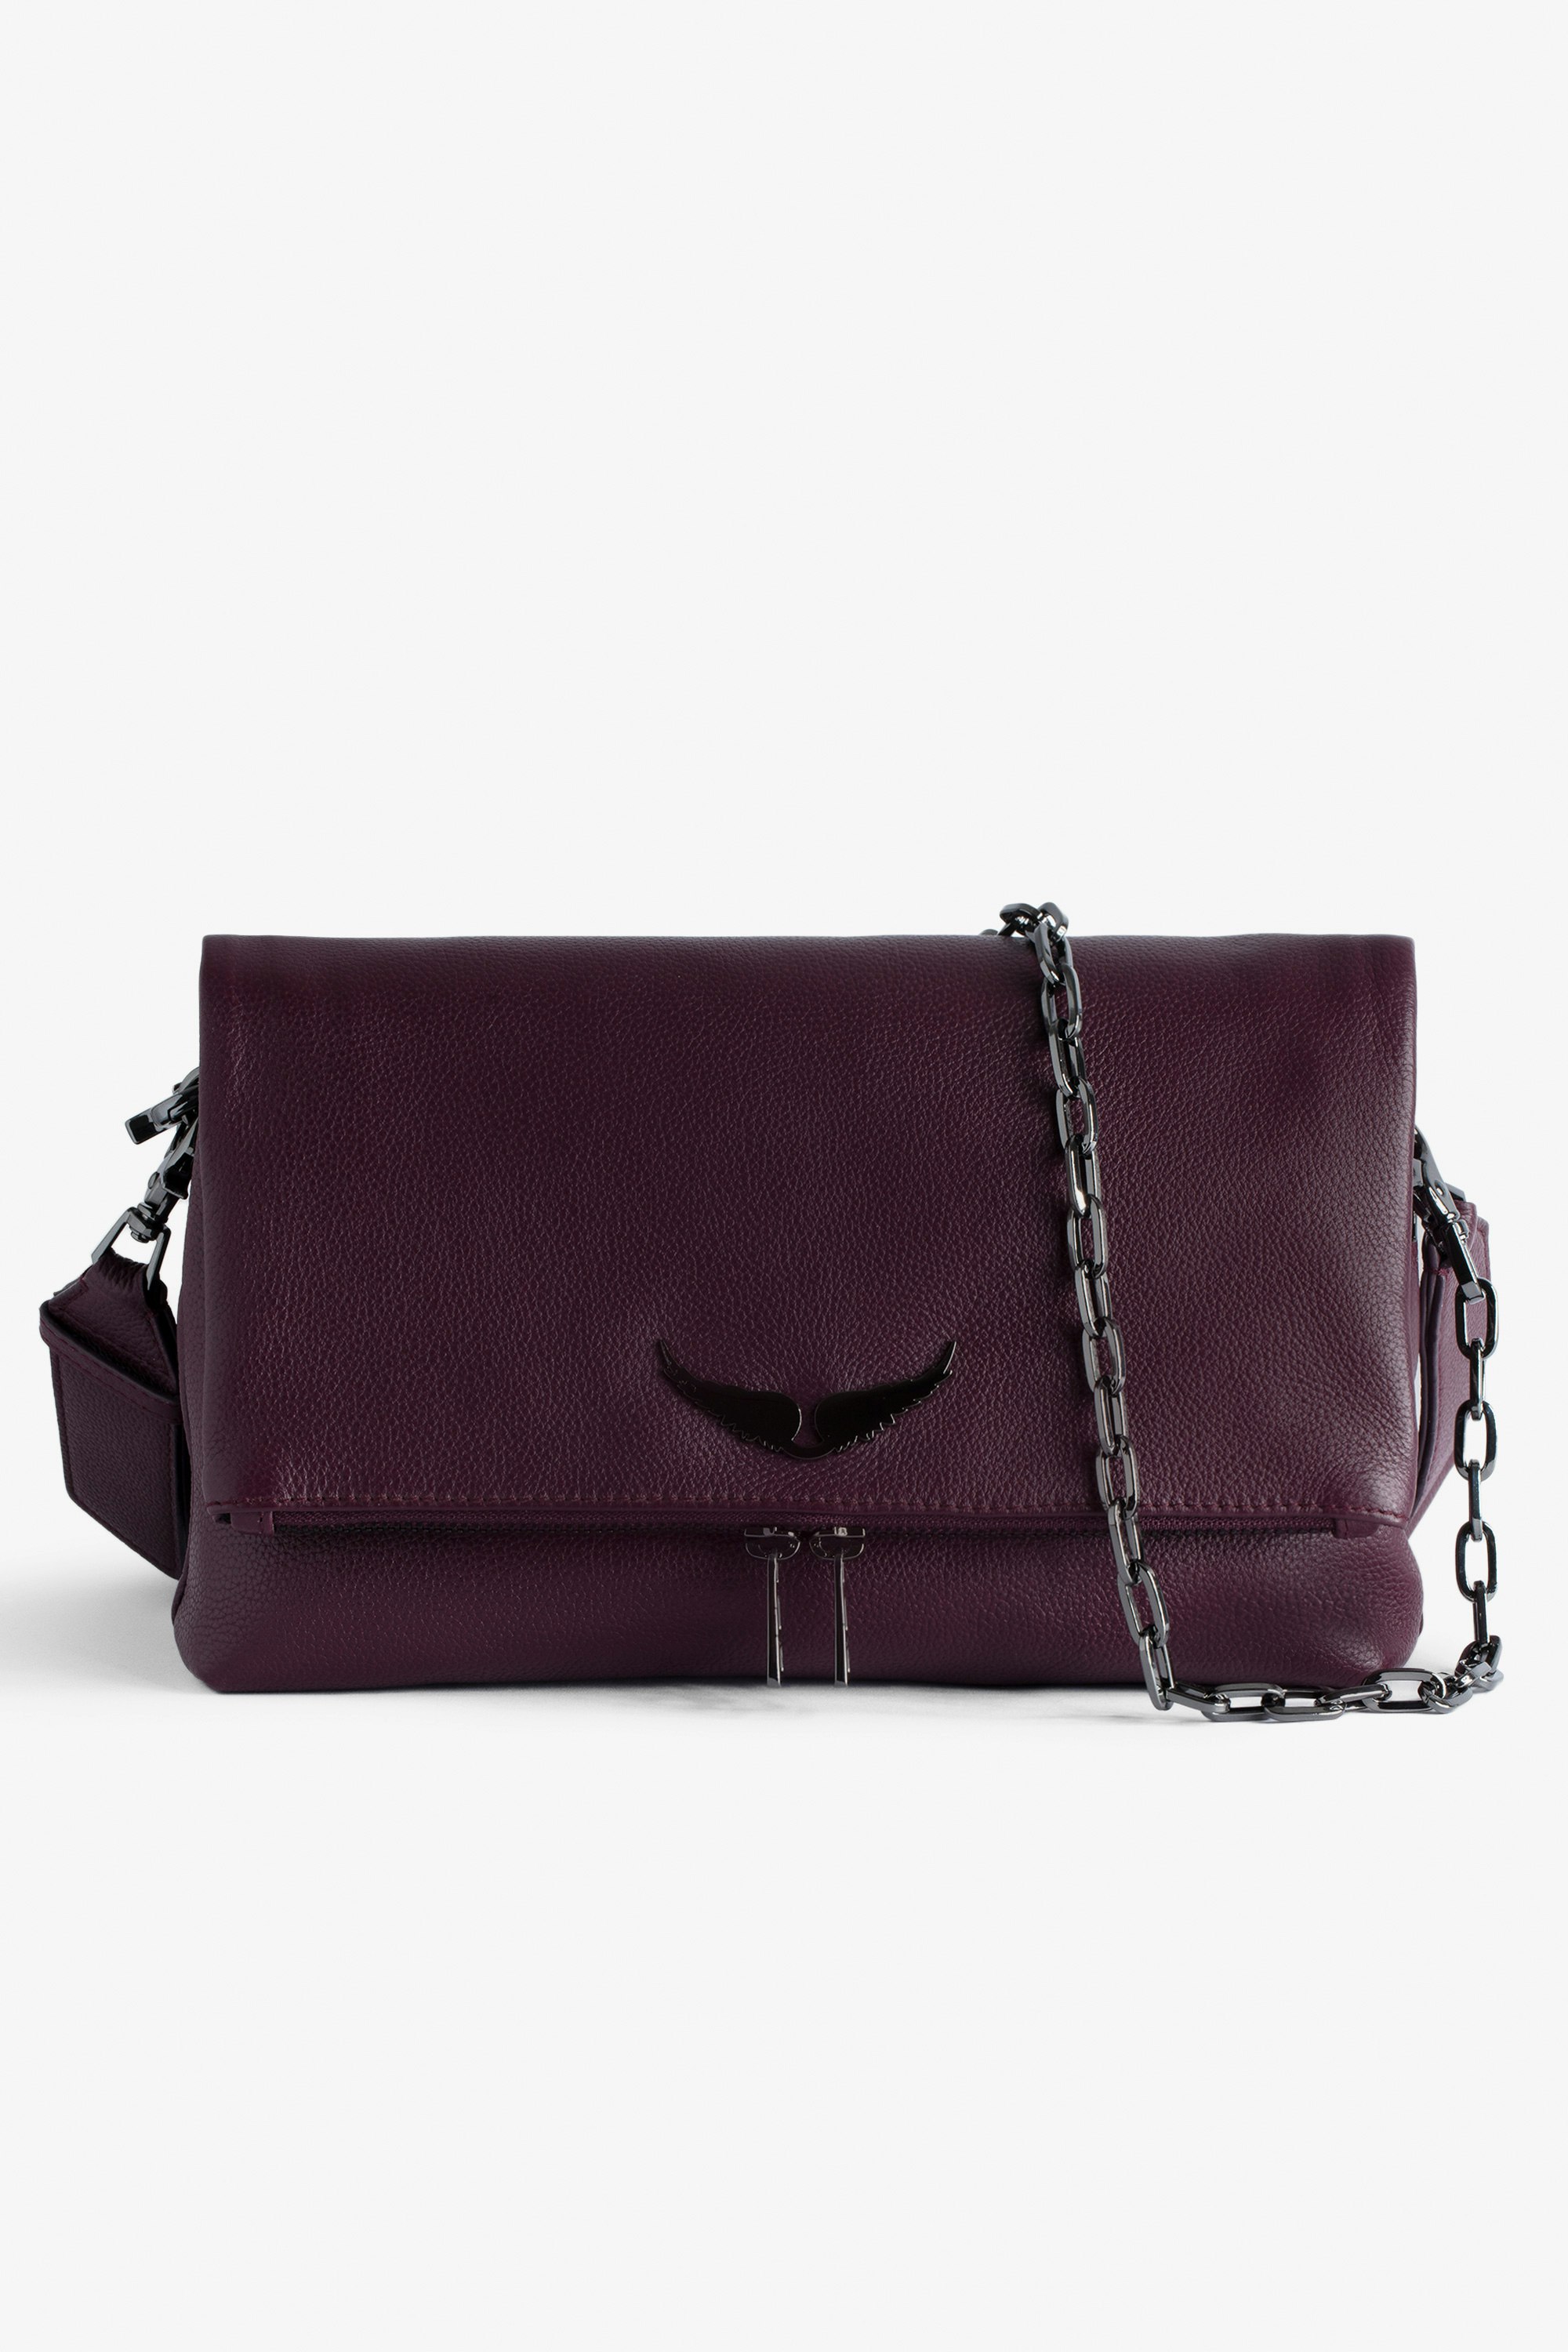 Tasche Rocky Tasche aus genarbtem Leder in Bordeauxrot mit Schulterriemen und Flügel-Charm für Damen